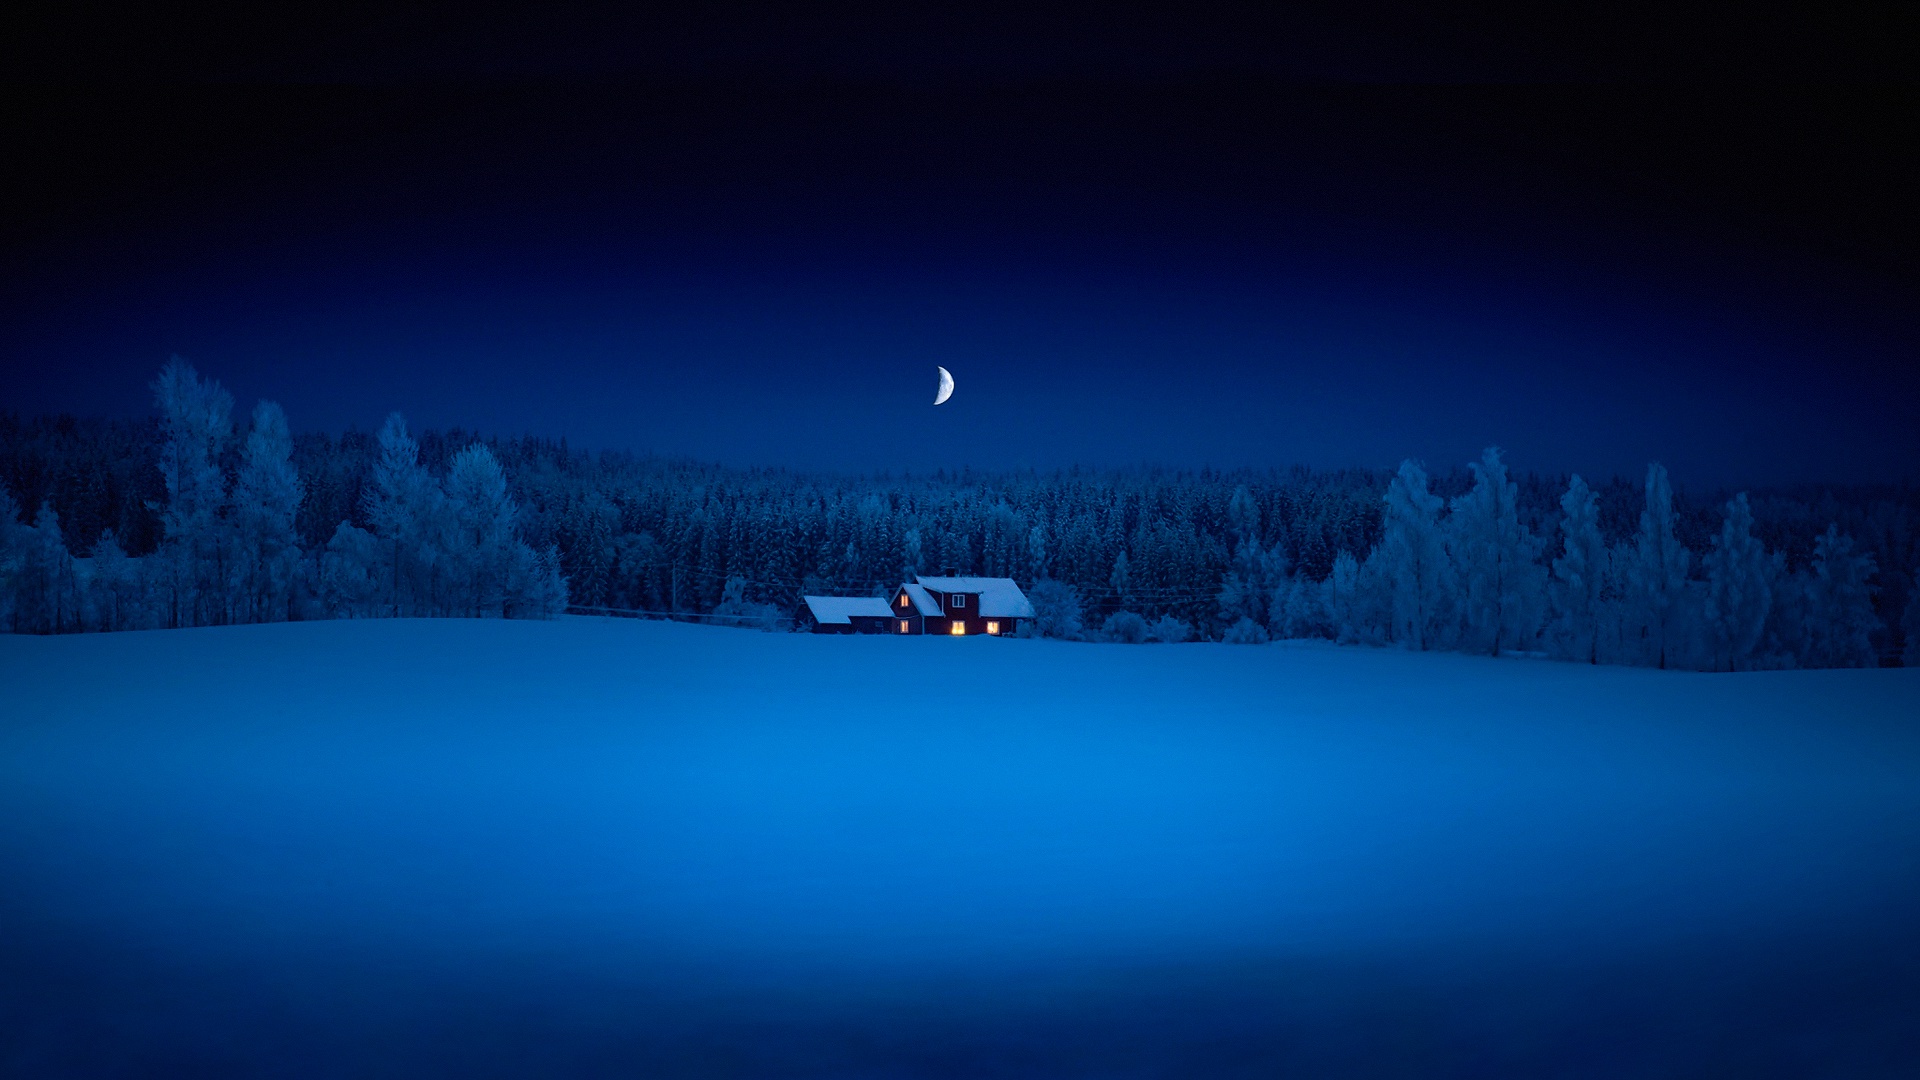 森林 雪夜 房子 月亮 风景桌面壁纸 风景壁纸 壁纸下载 彼岸桌面